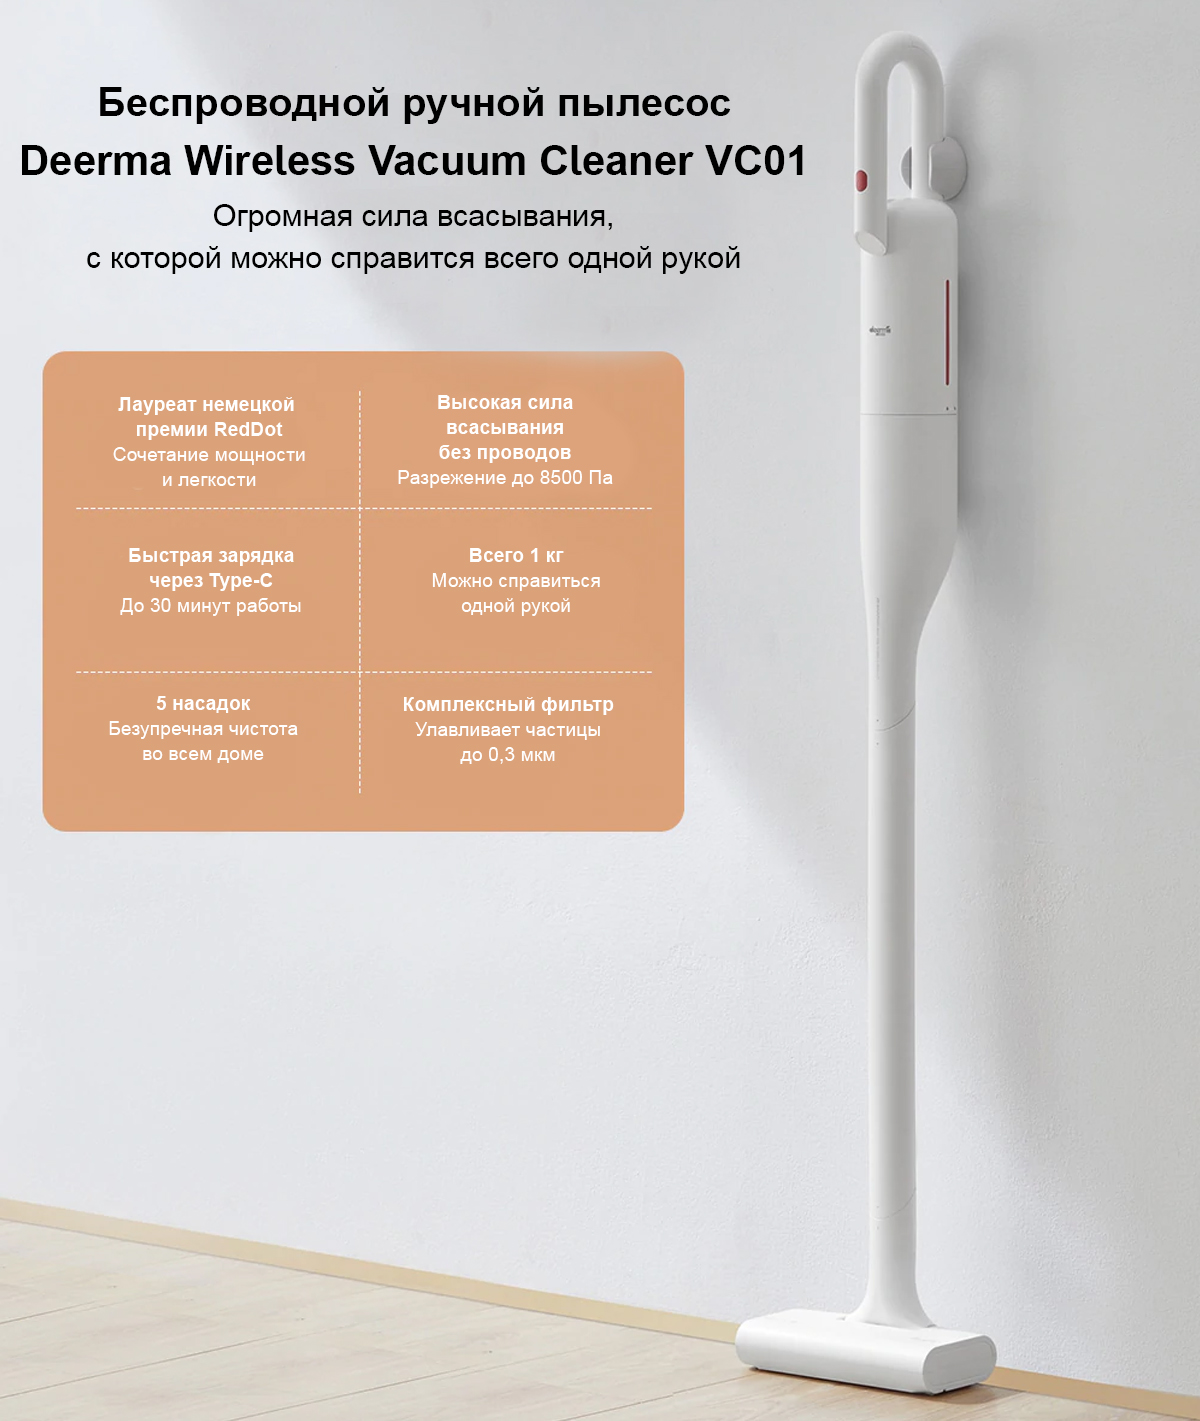 Беспроводной ручной пылесос Deerma Wireless Vacuum Cleaner VC01